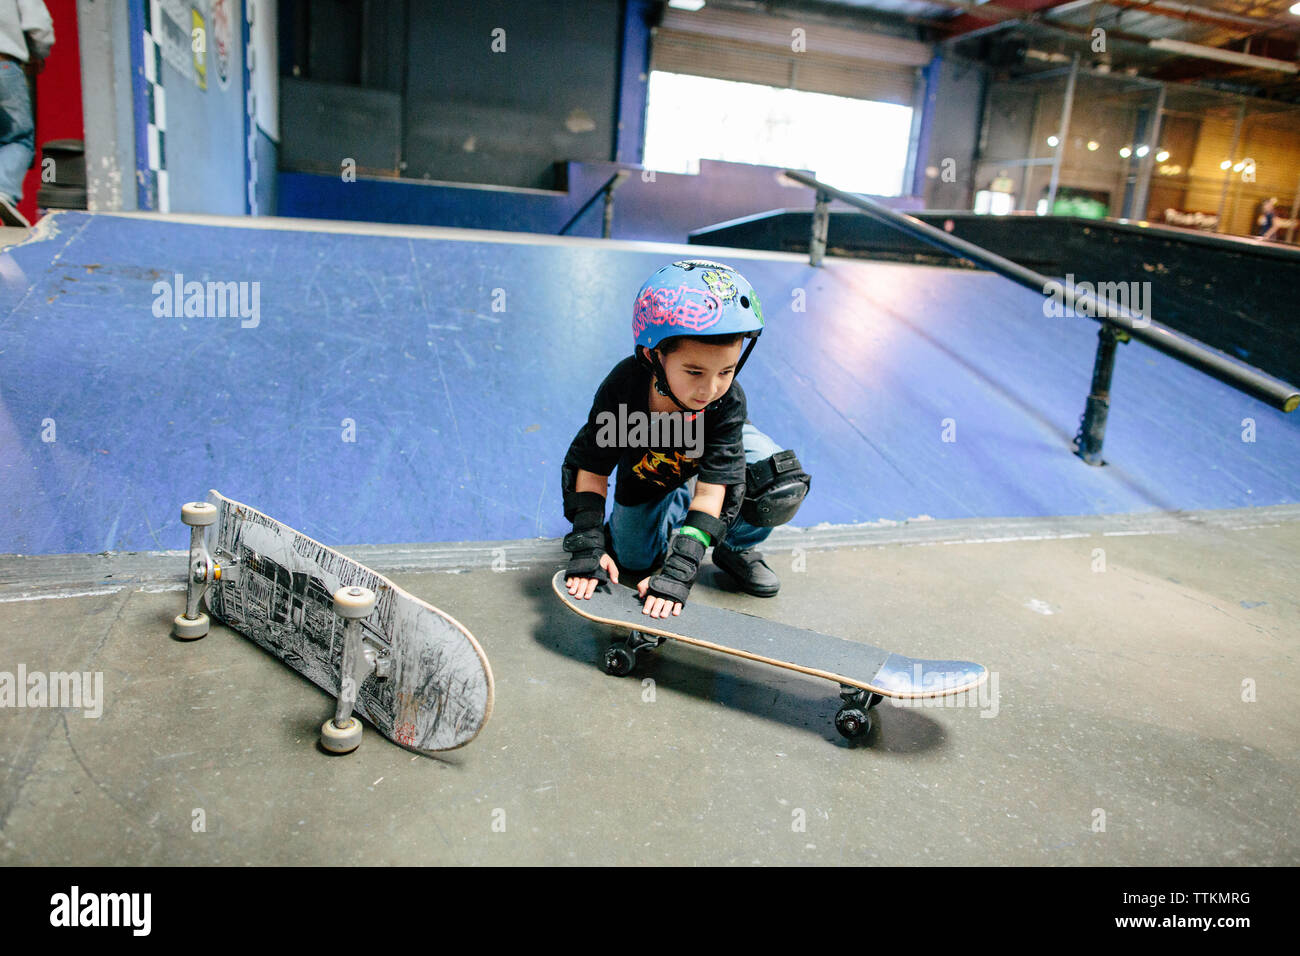 Petit garçon s'accroupit vers le bas pour mettre en place son skateboard Banque D'Images